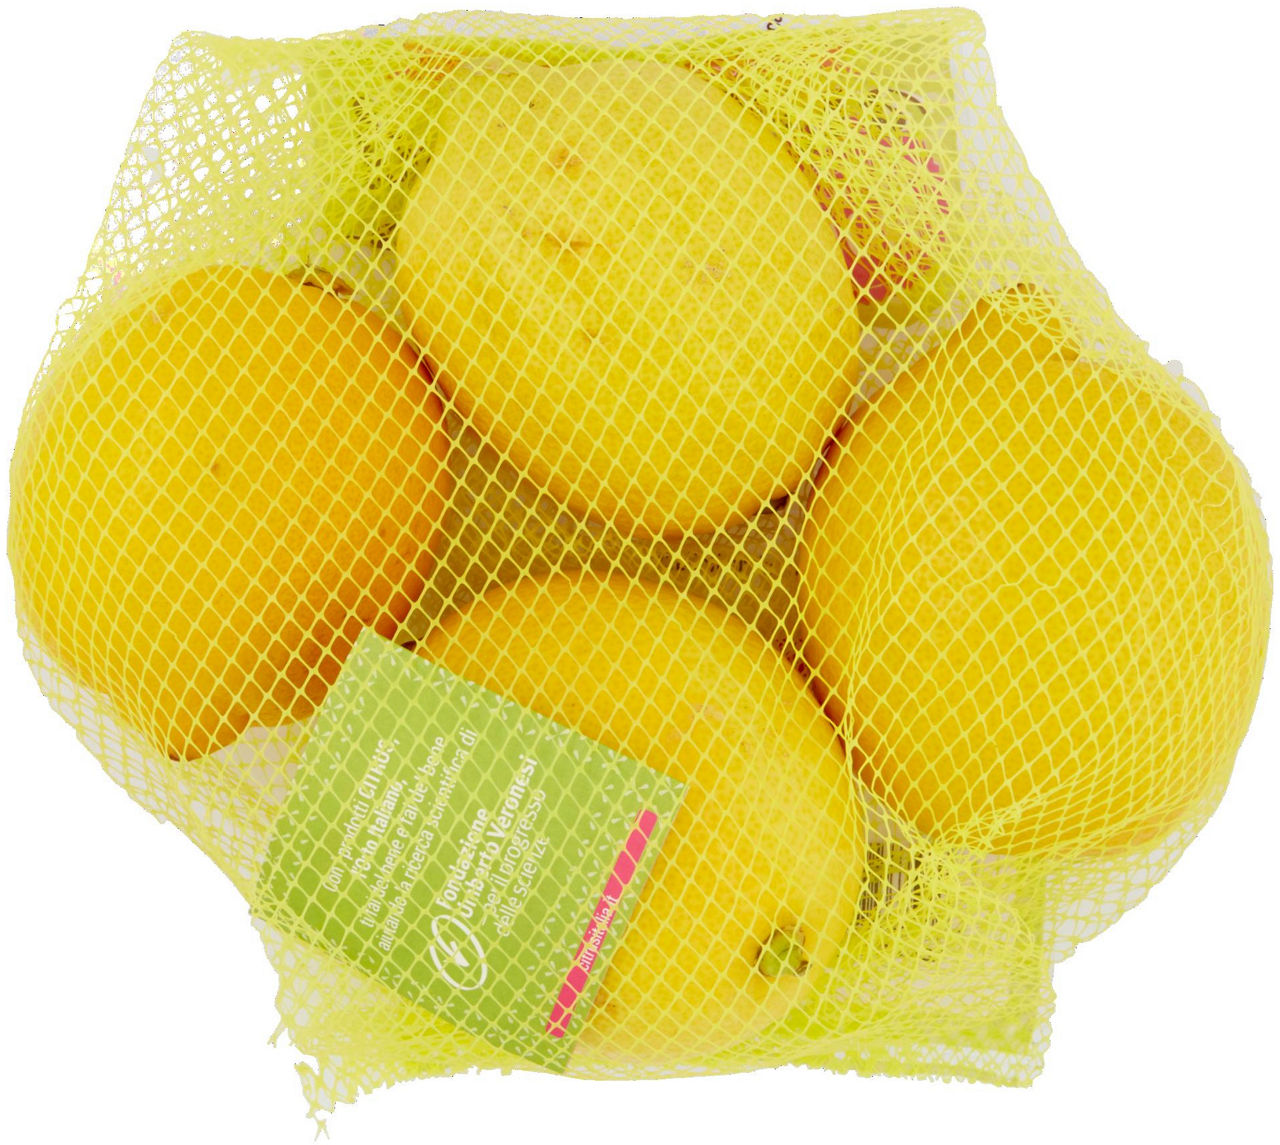 Limoni primofiore buccia edibile gr 500 - 5